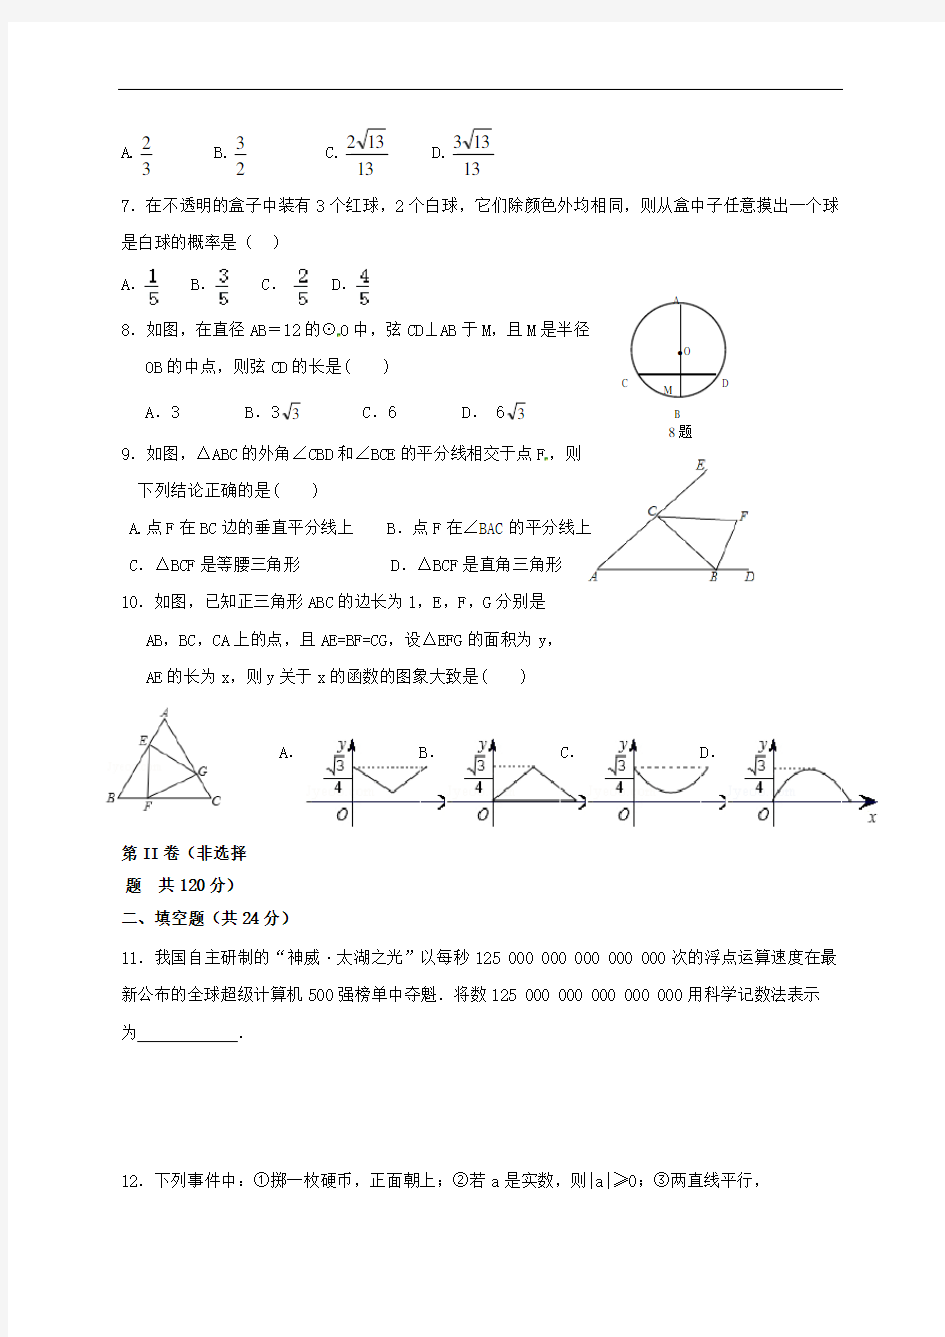 【初中数学】中考数学模拟试题(10套) 人教版8